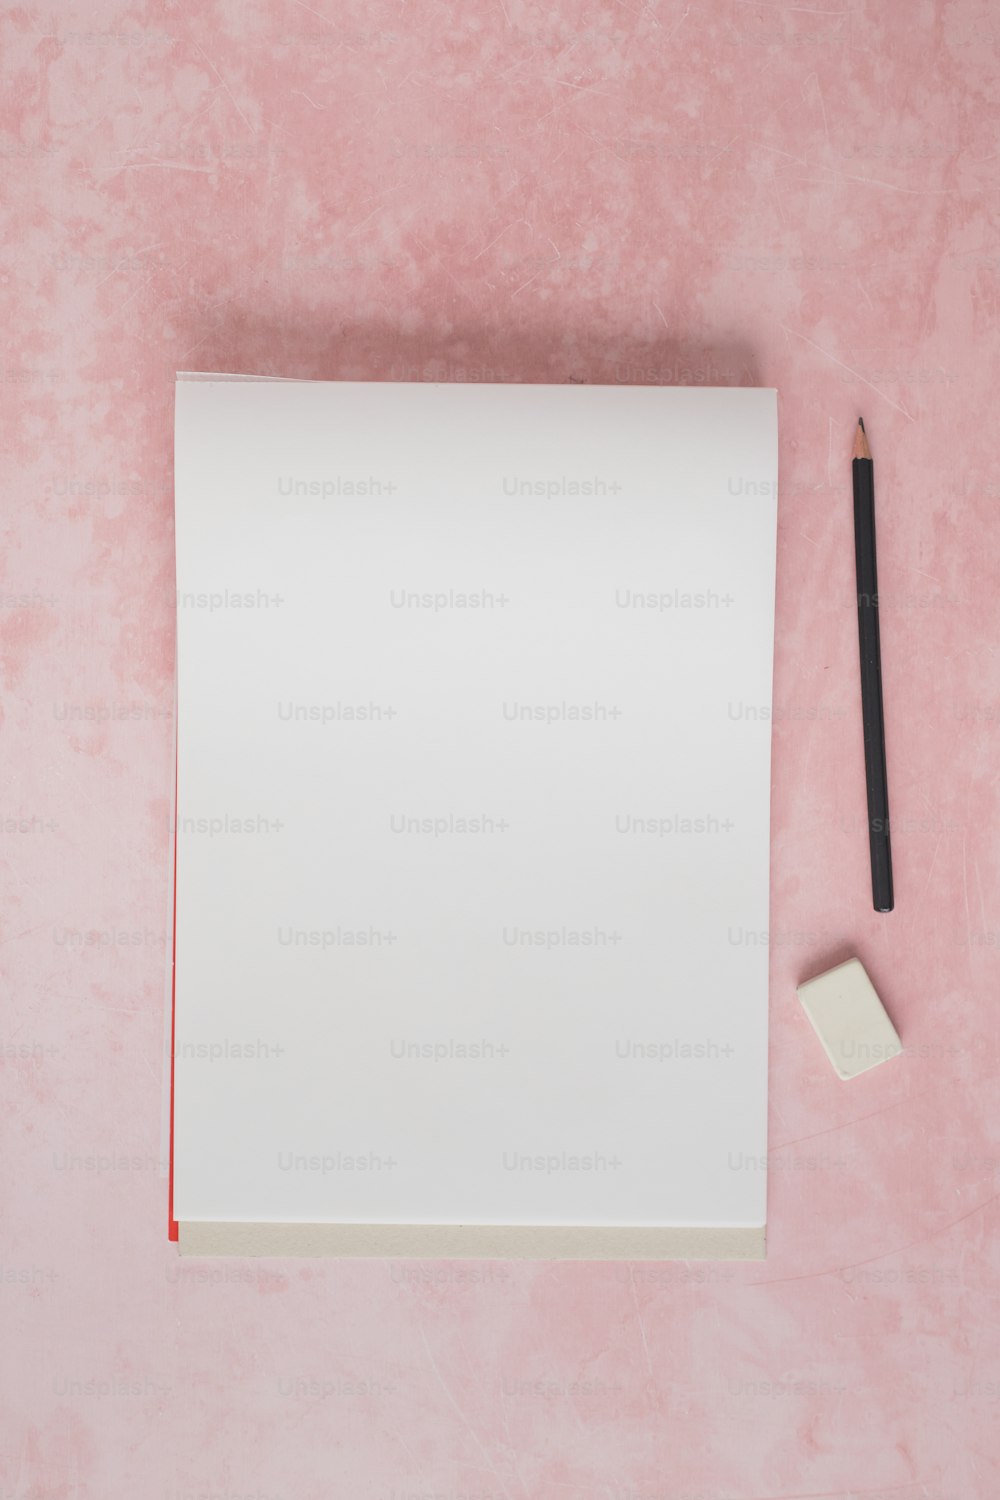 um pedaço de papel e um lápis sobre uma superfície rosa